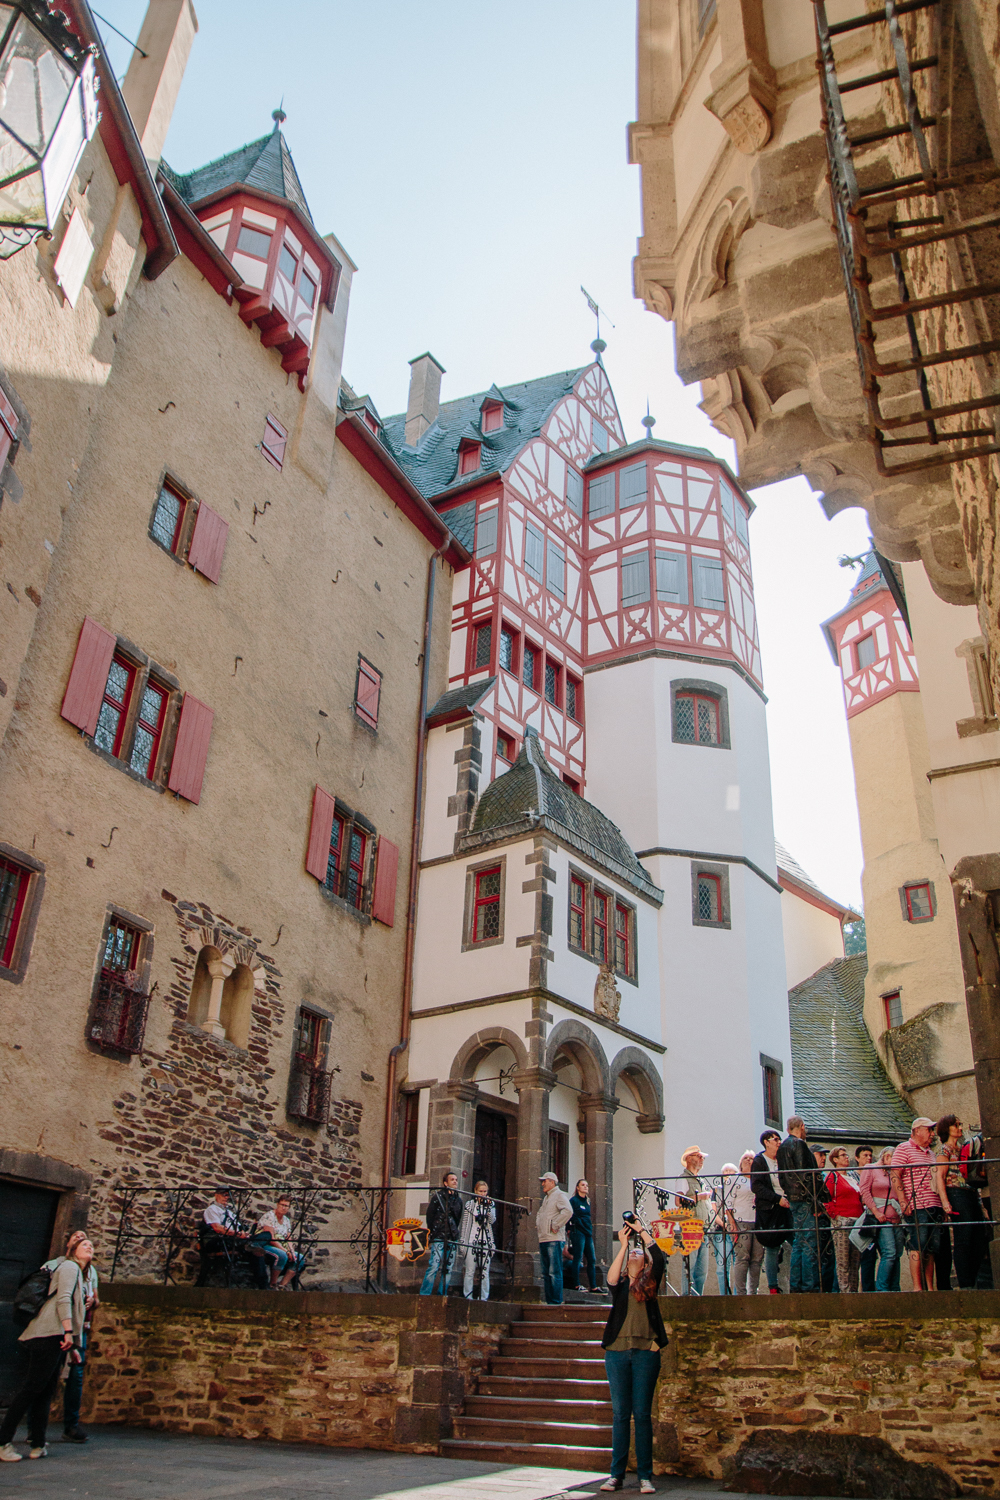 Courtyard at Burg Eltz Castle